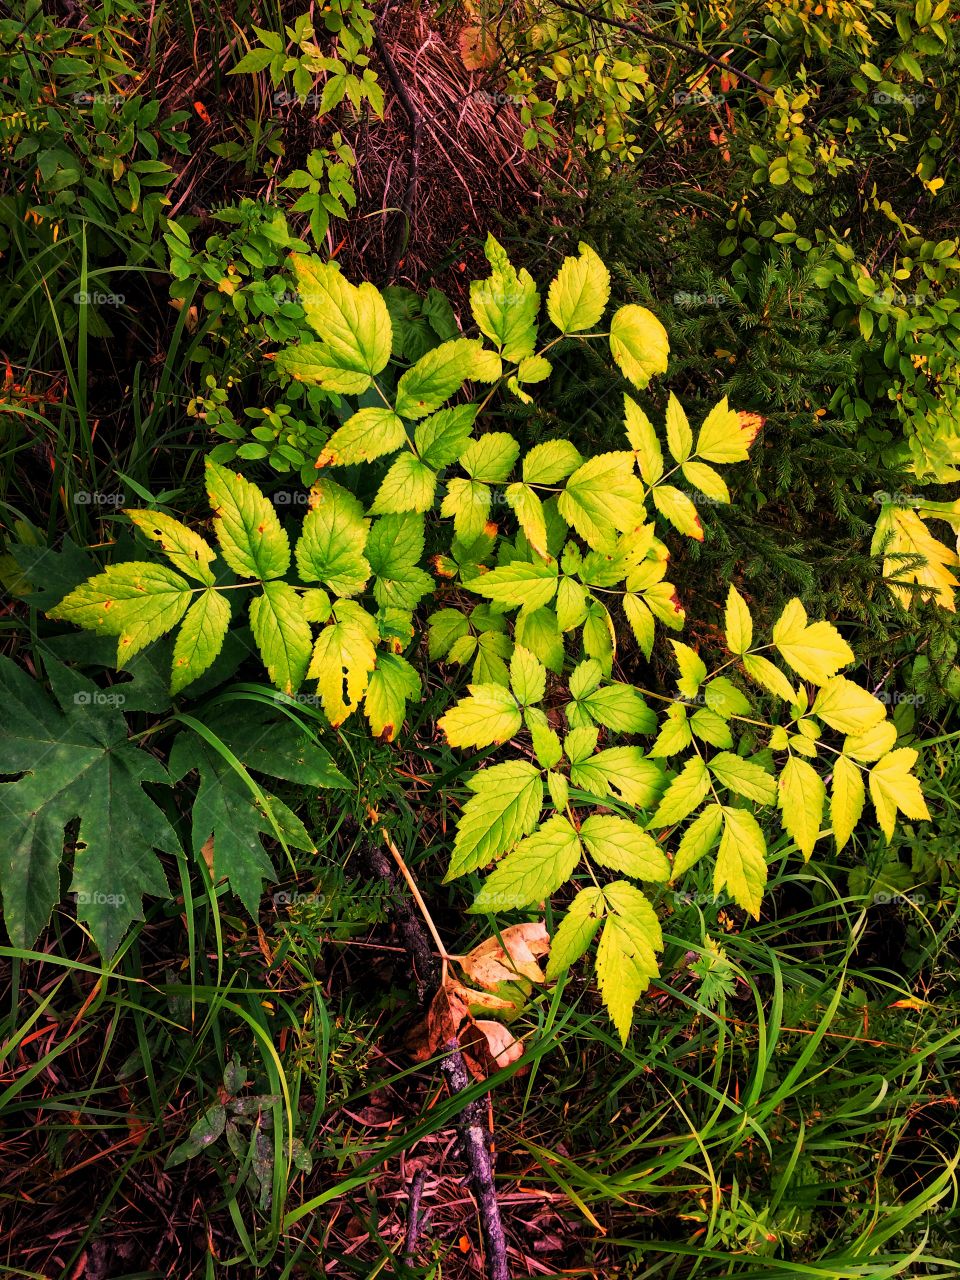 Autumn forest plants texture 